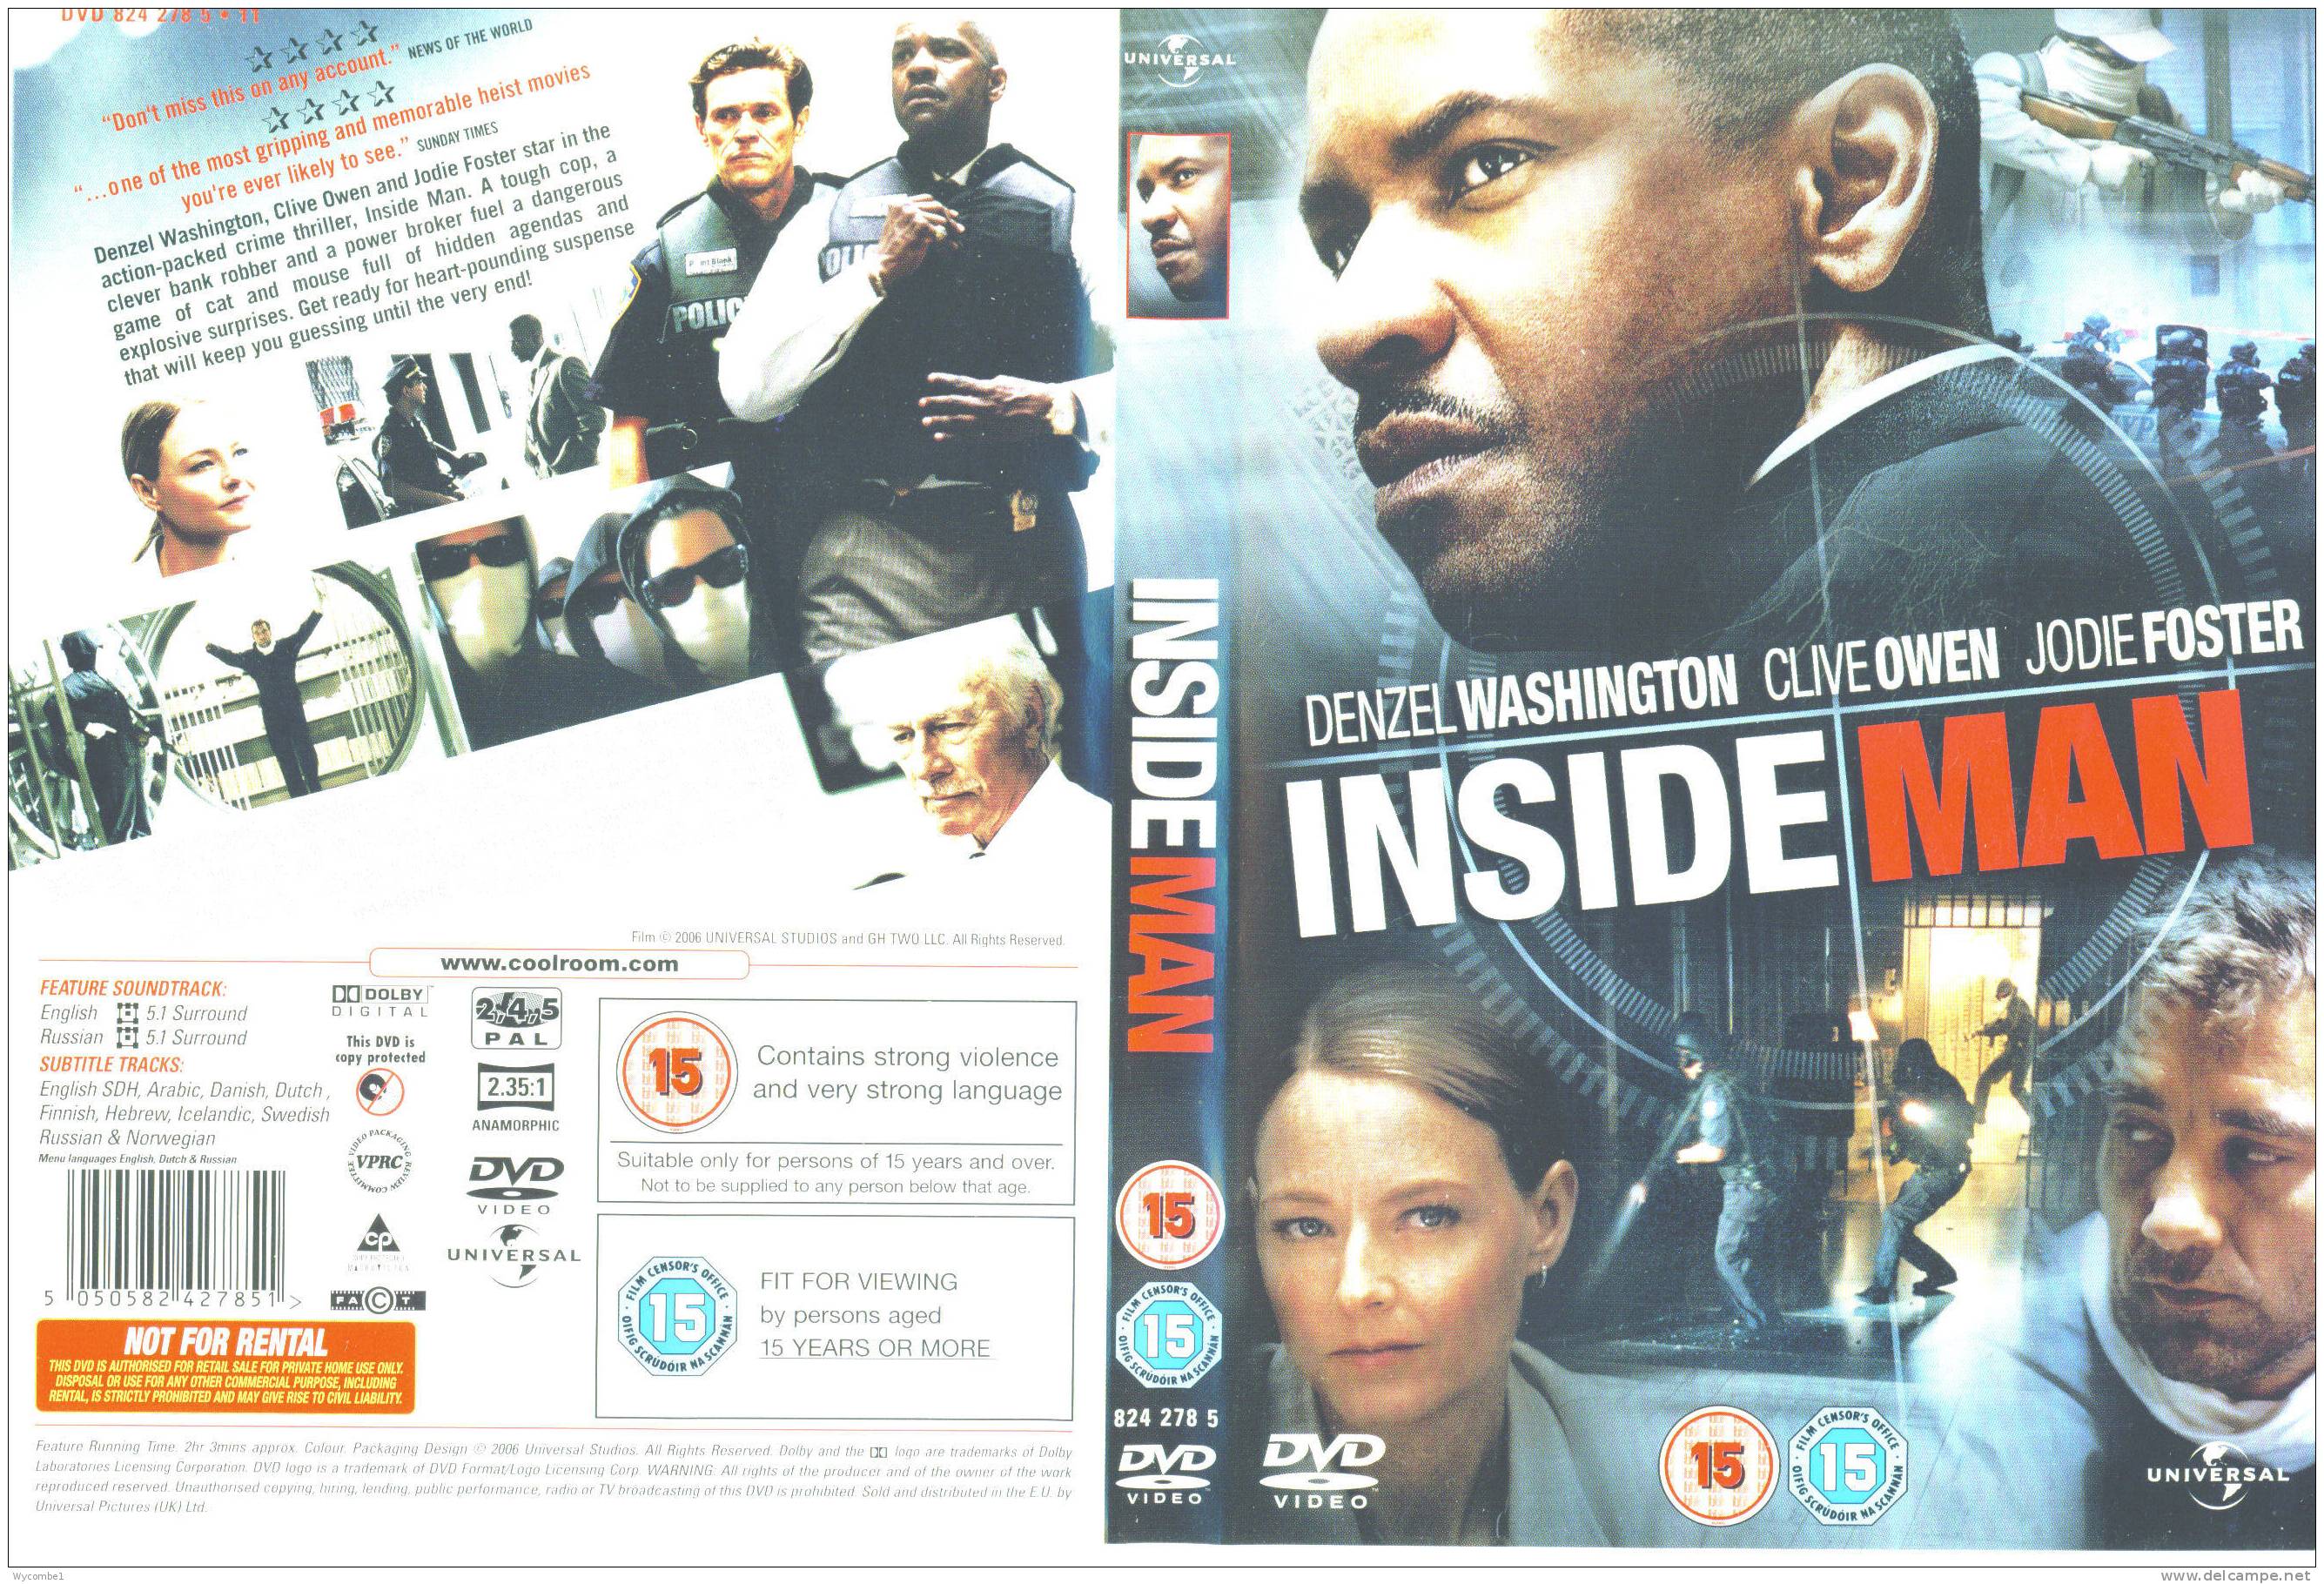 INSIDE MAN - Denzel Washington (Details As Scan) - Policiers